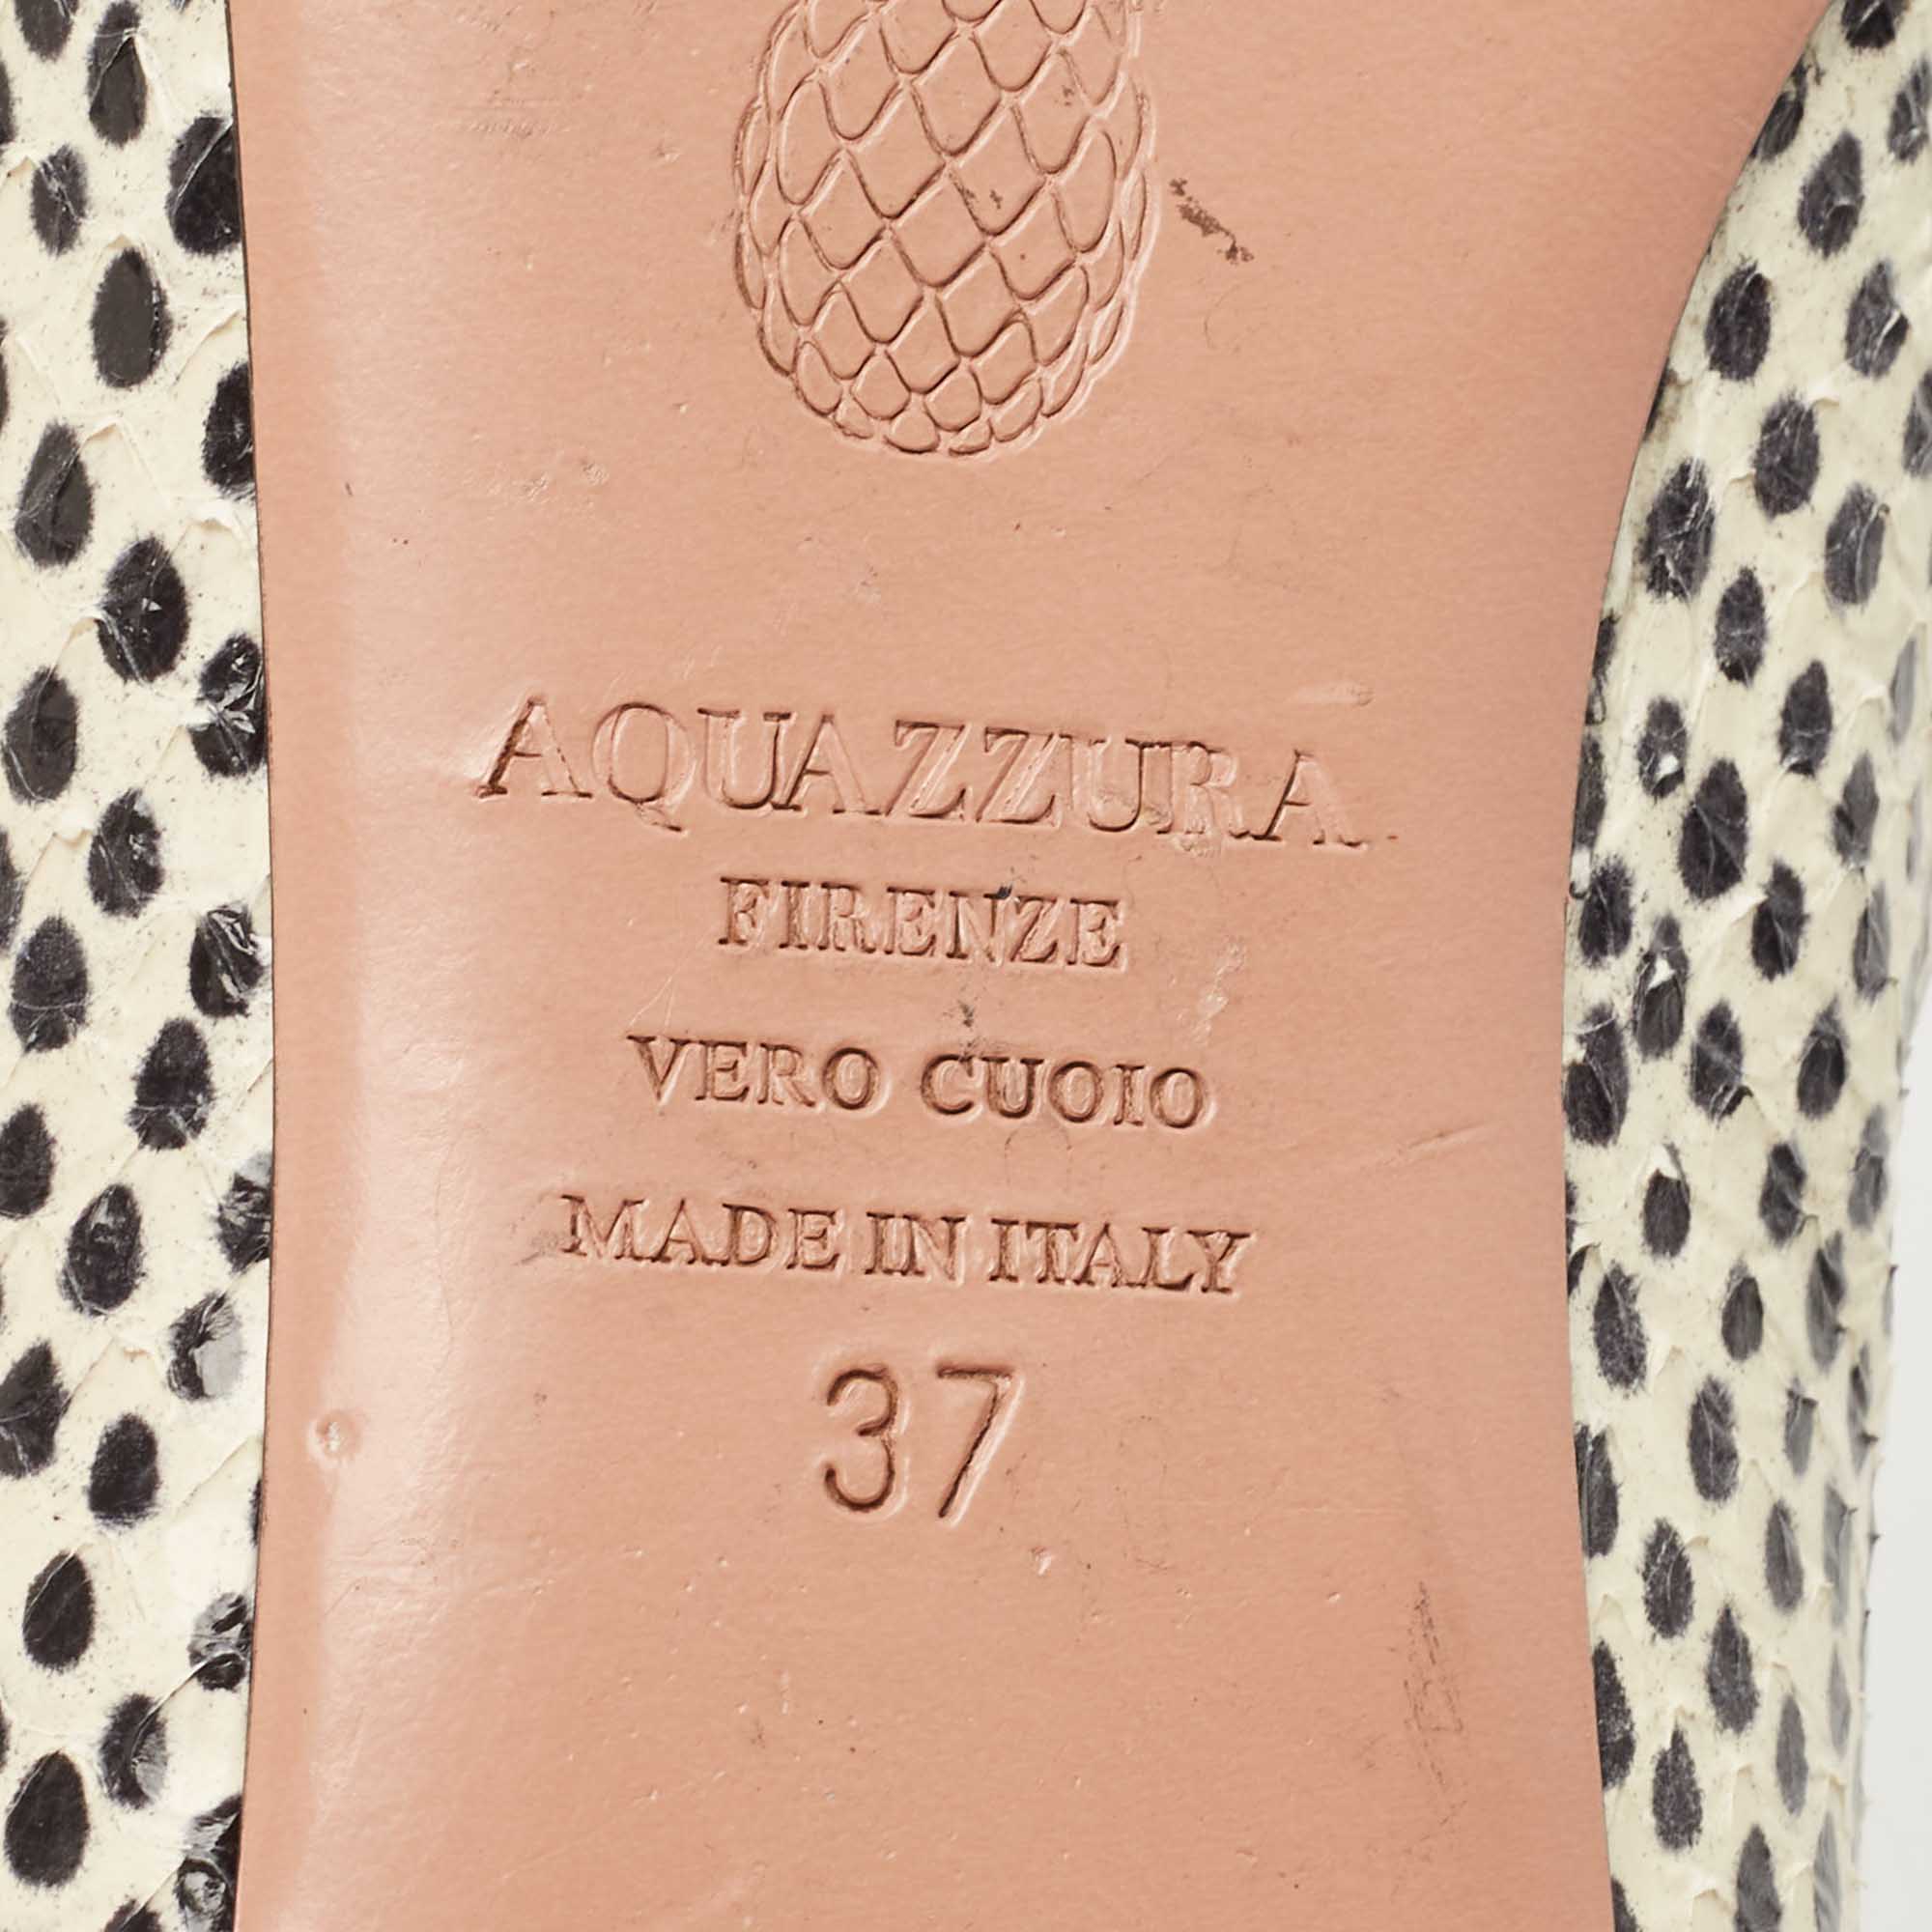 Aquazzura Beige/Cream Snake Embossed Leather Forever Marilyn Tassel Ballet Flats Size 37